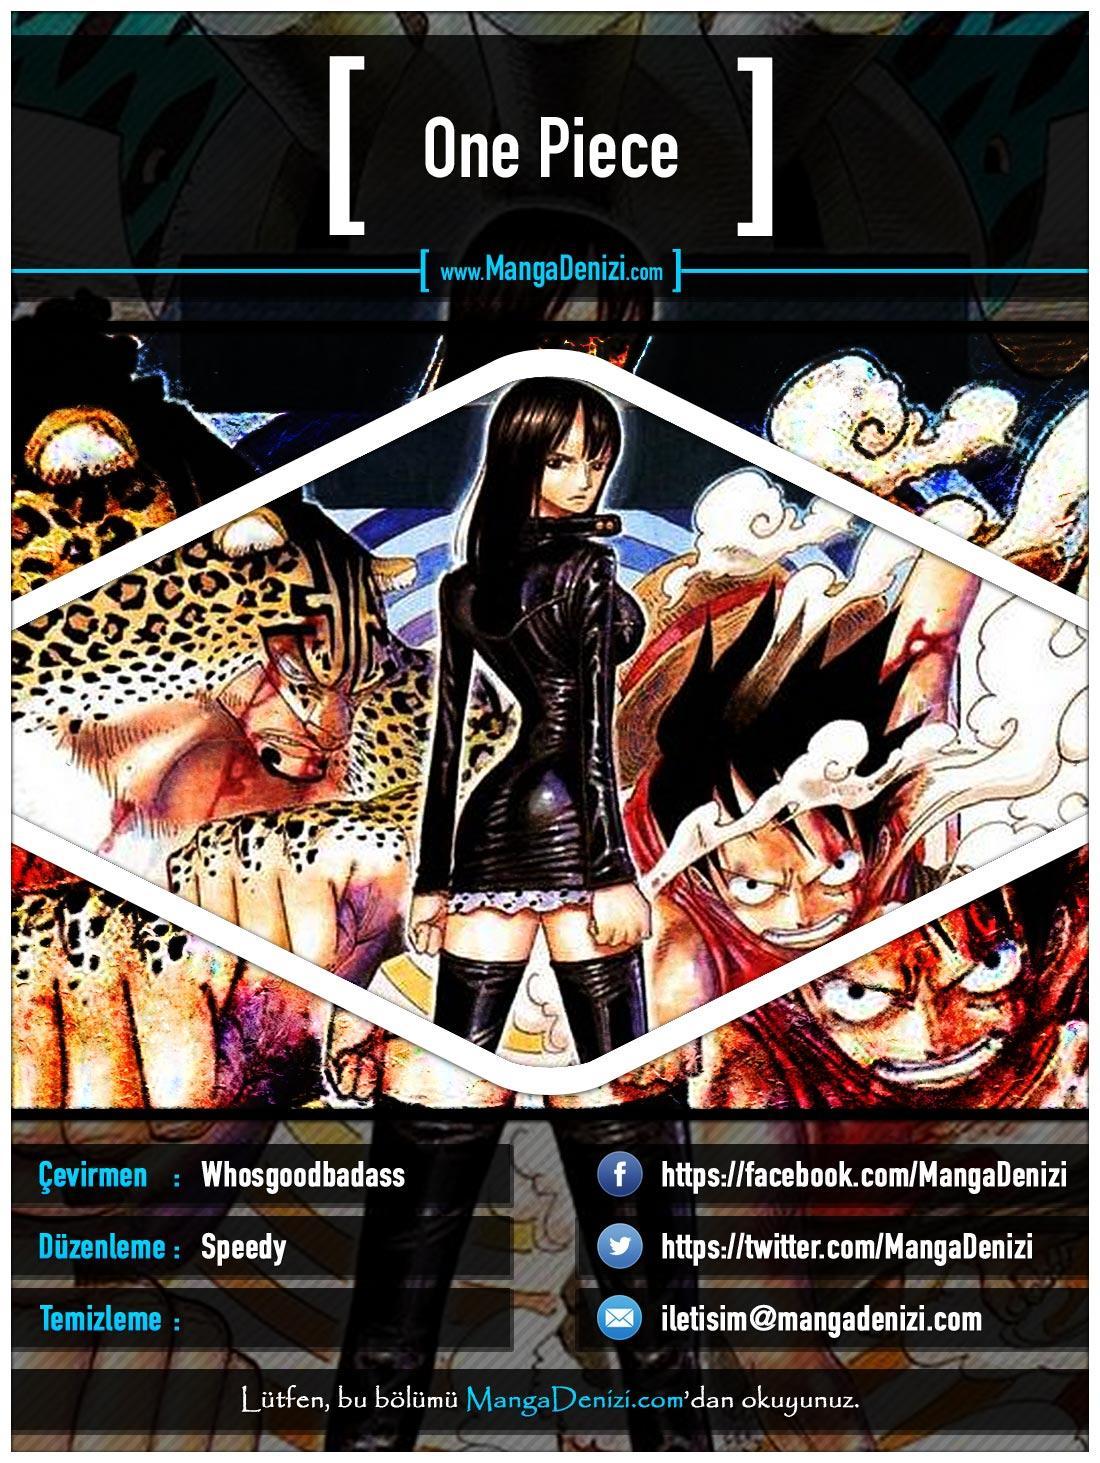 One Piece [Renkli] mangasının 0438 bölümünün 1. sayfasını okuyorsunuz.